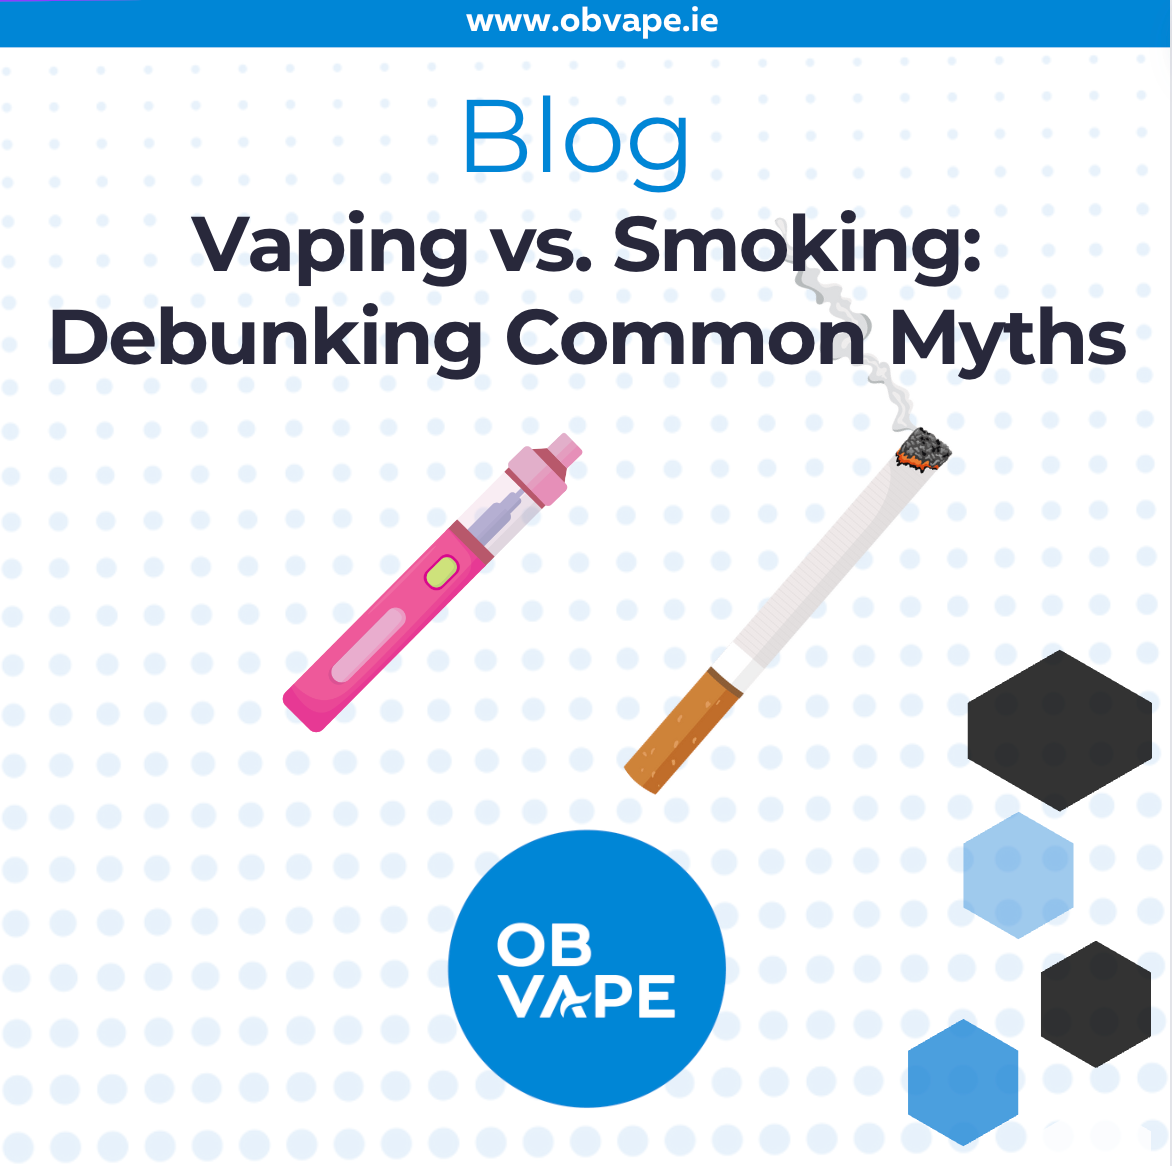 Vaping vs. Smoking: Debunking The Myths